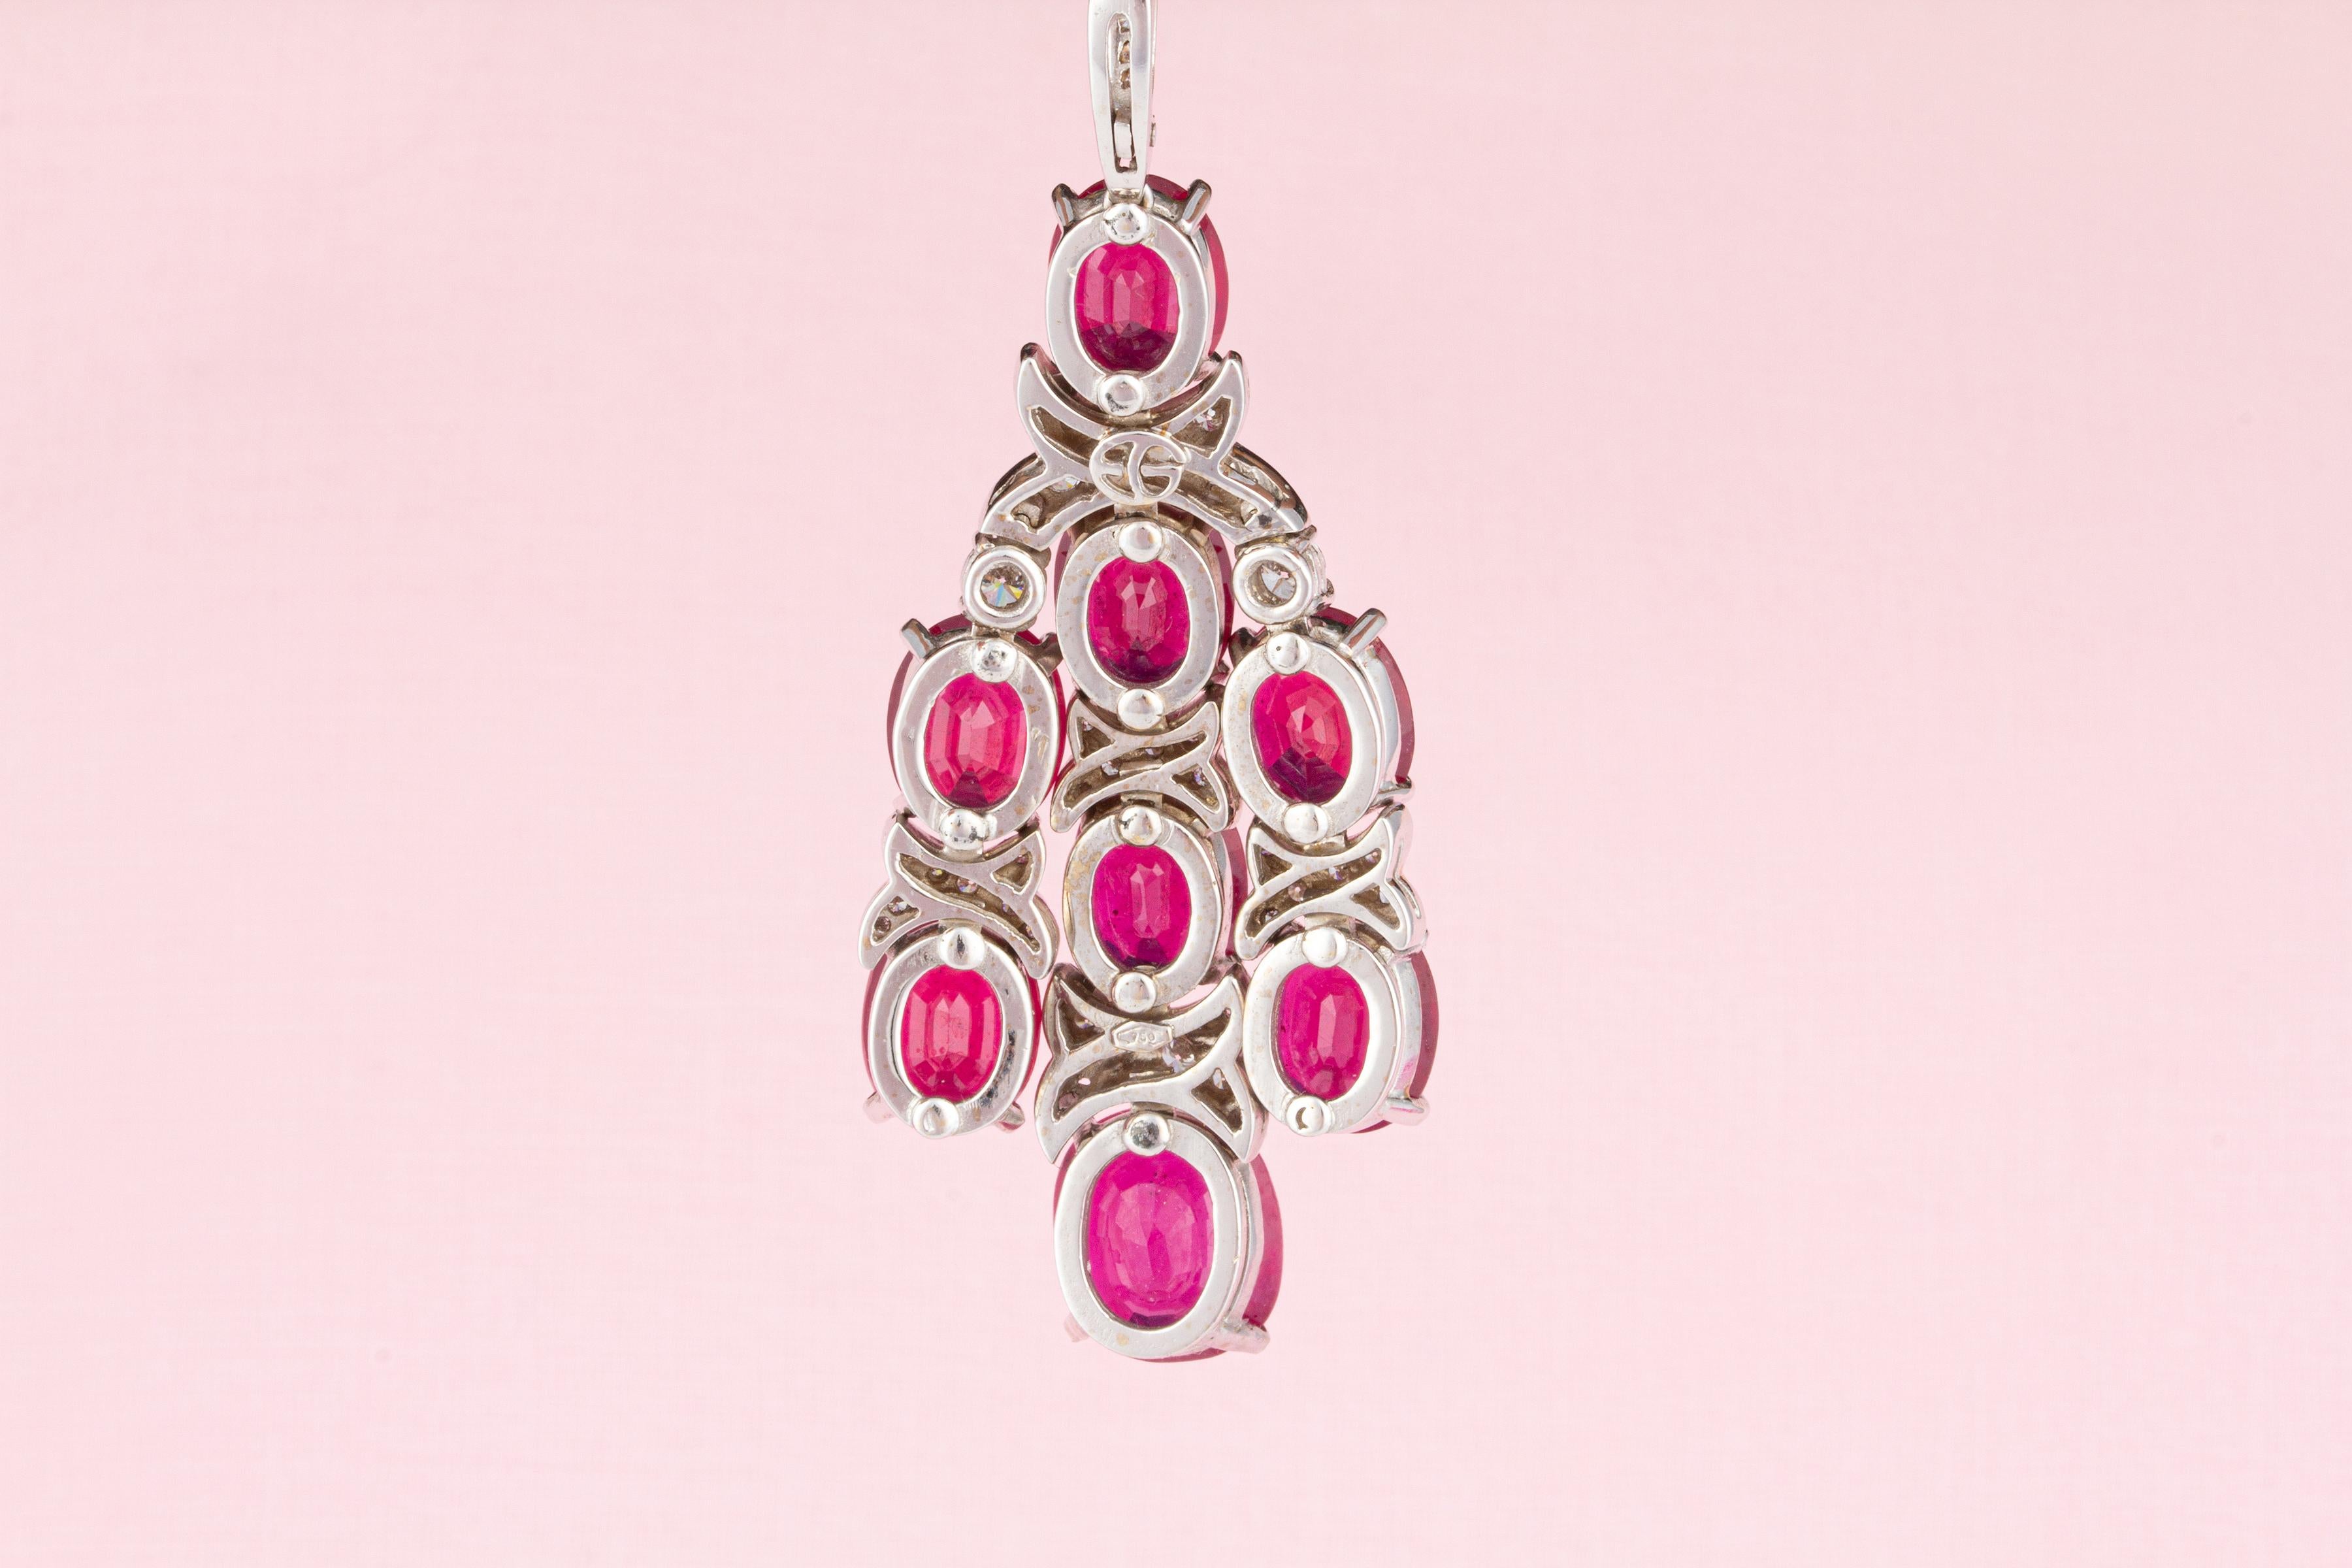 Artist Ella Gafter Ruby Diamond Necklace Earrings Chandelier Set For Sale